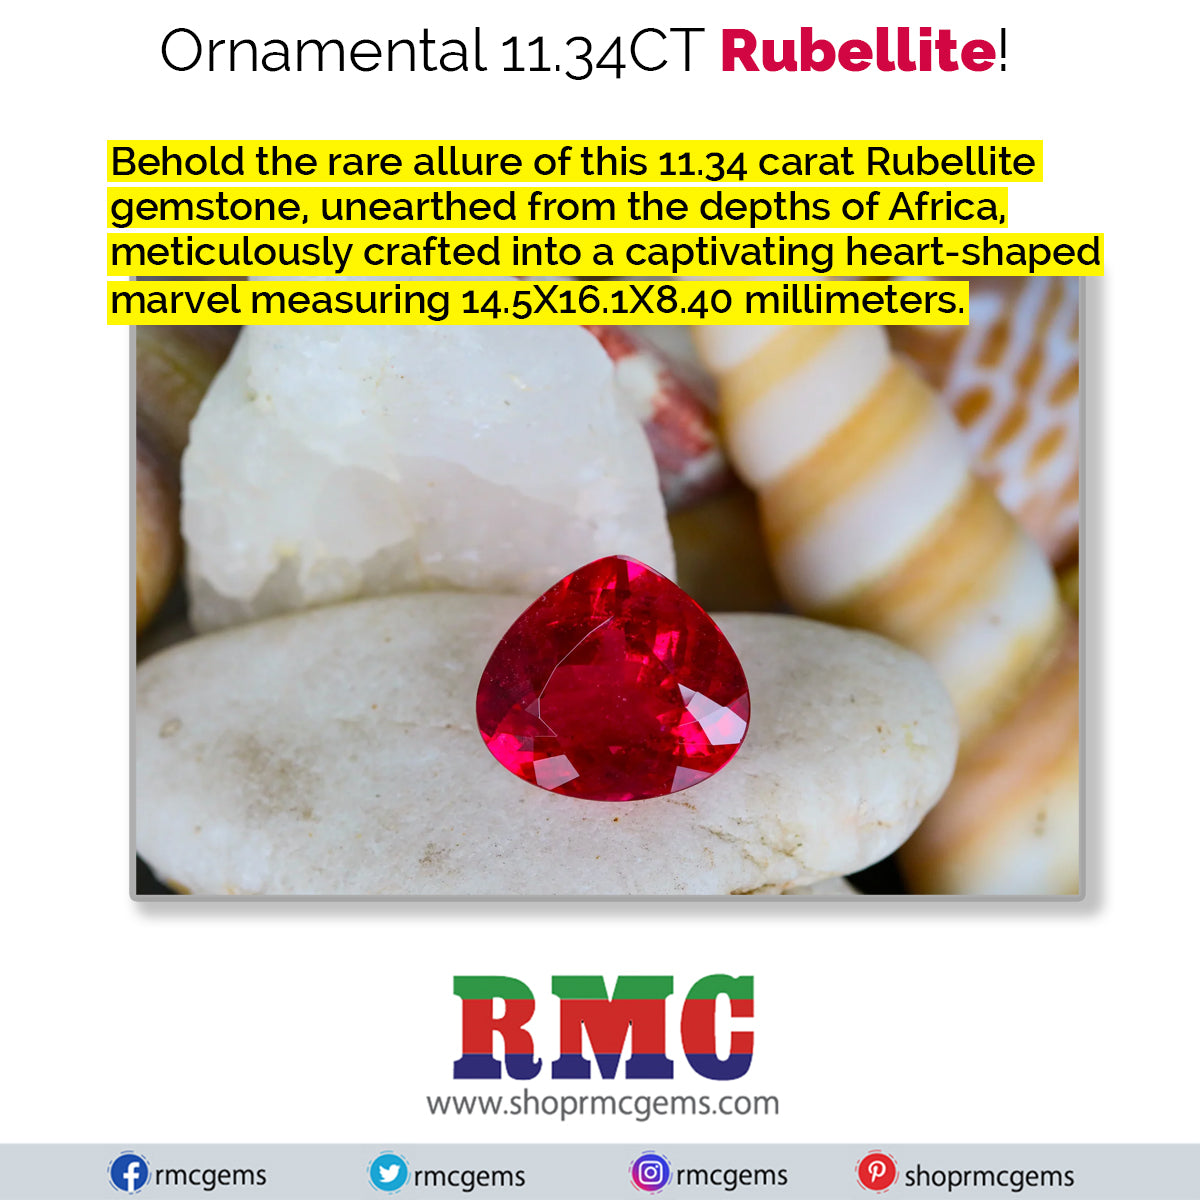 Ornamental 11.34CT Rubellite